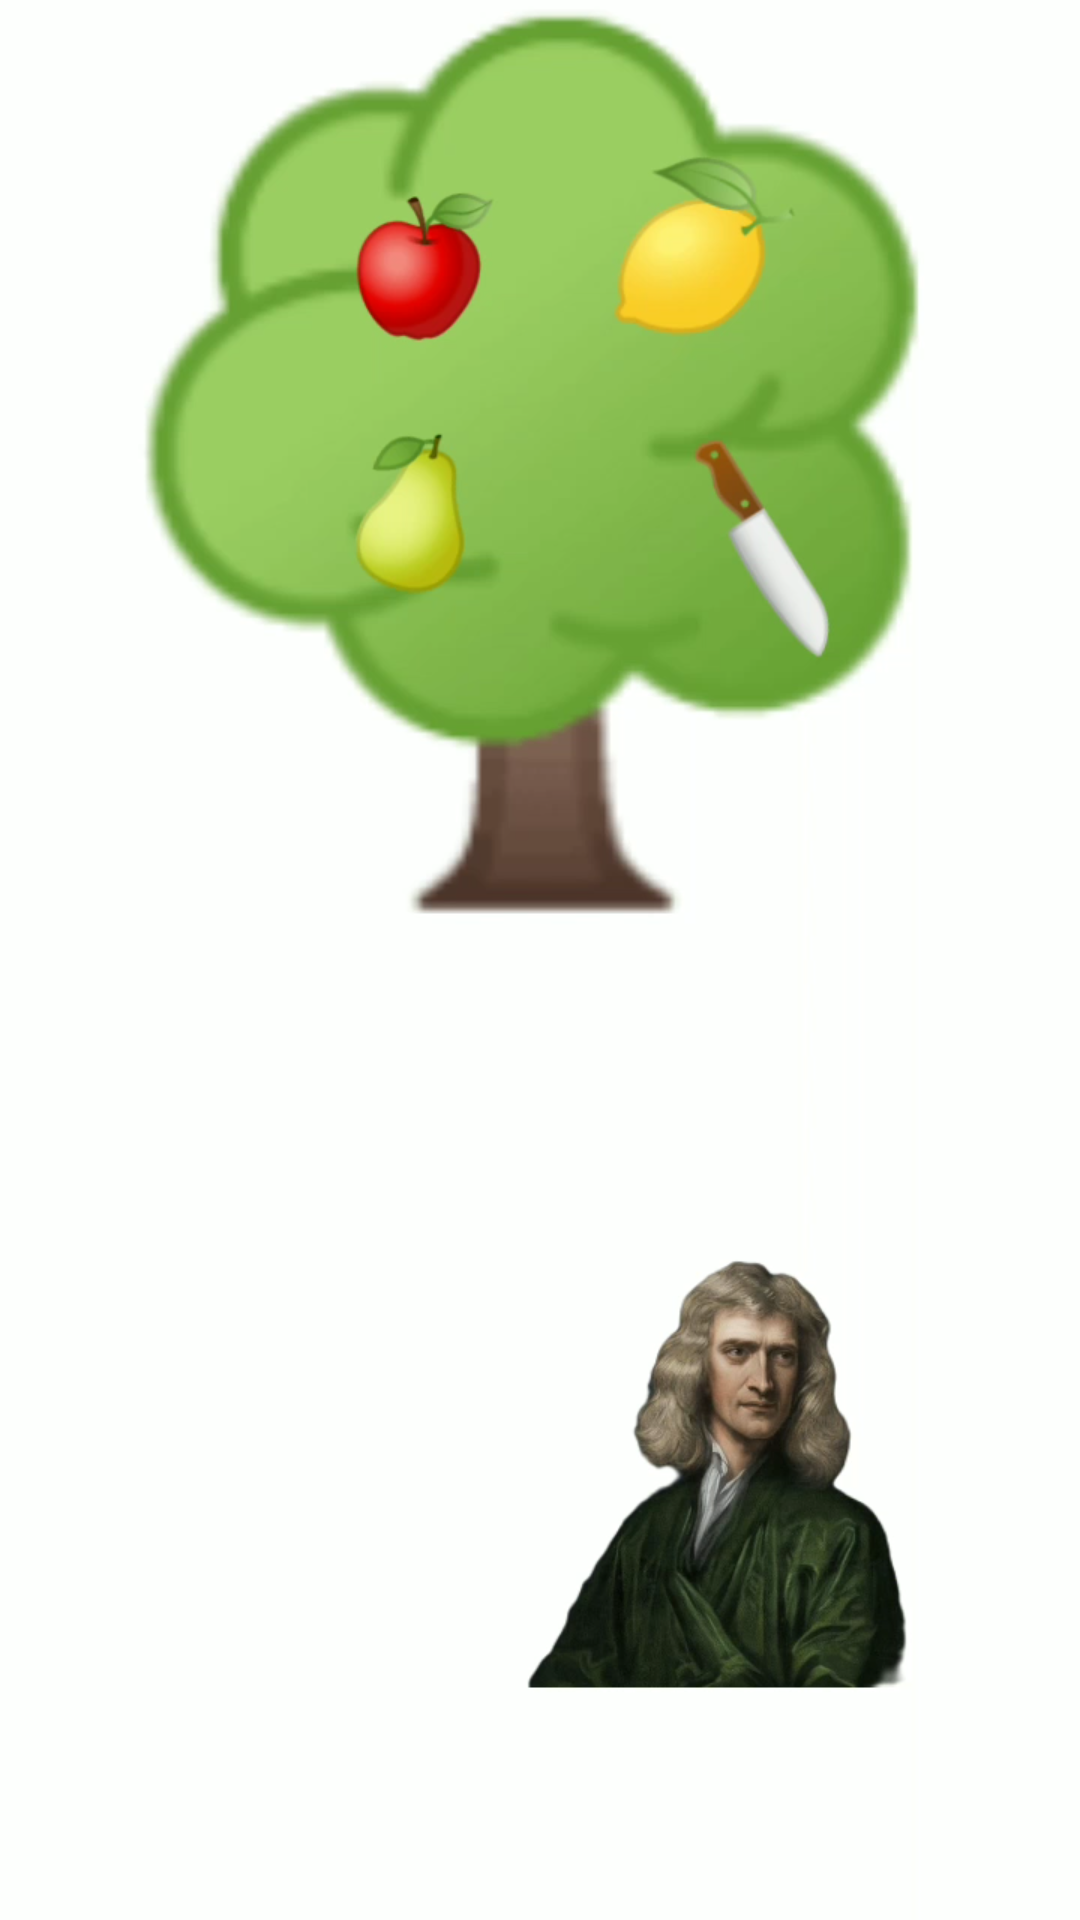 牛顿被苹果砸全过程